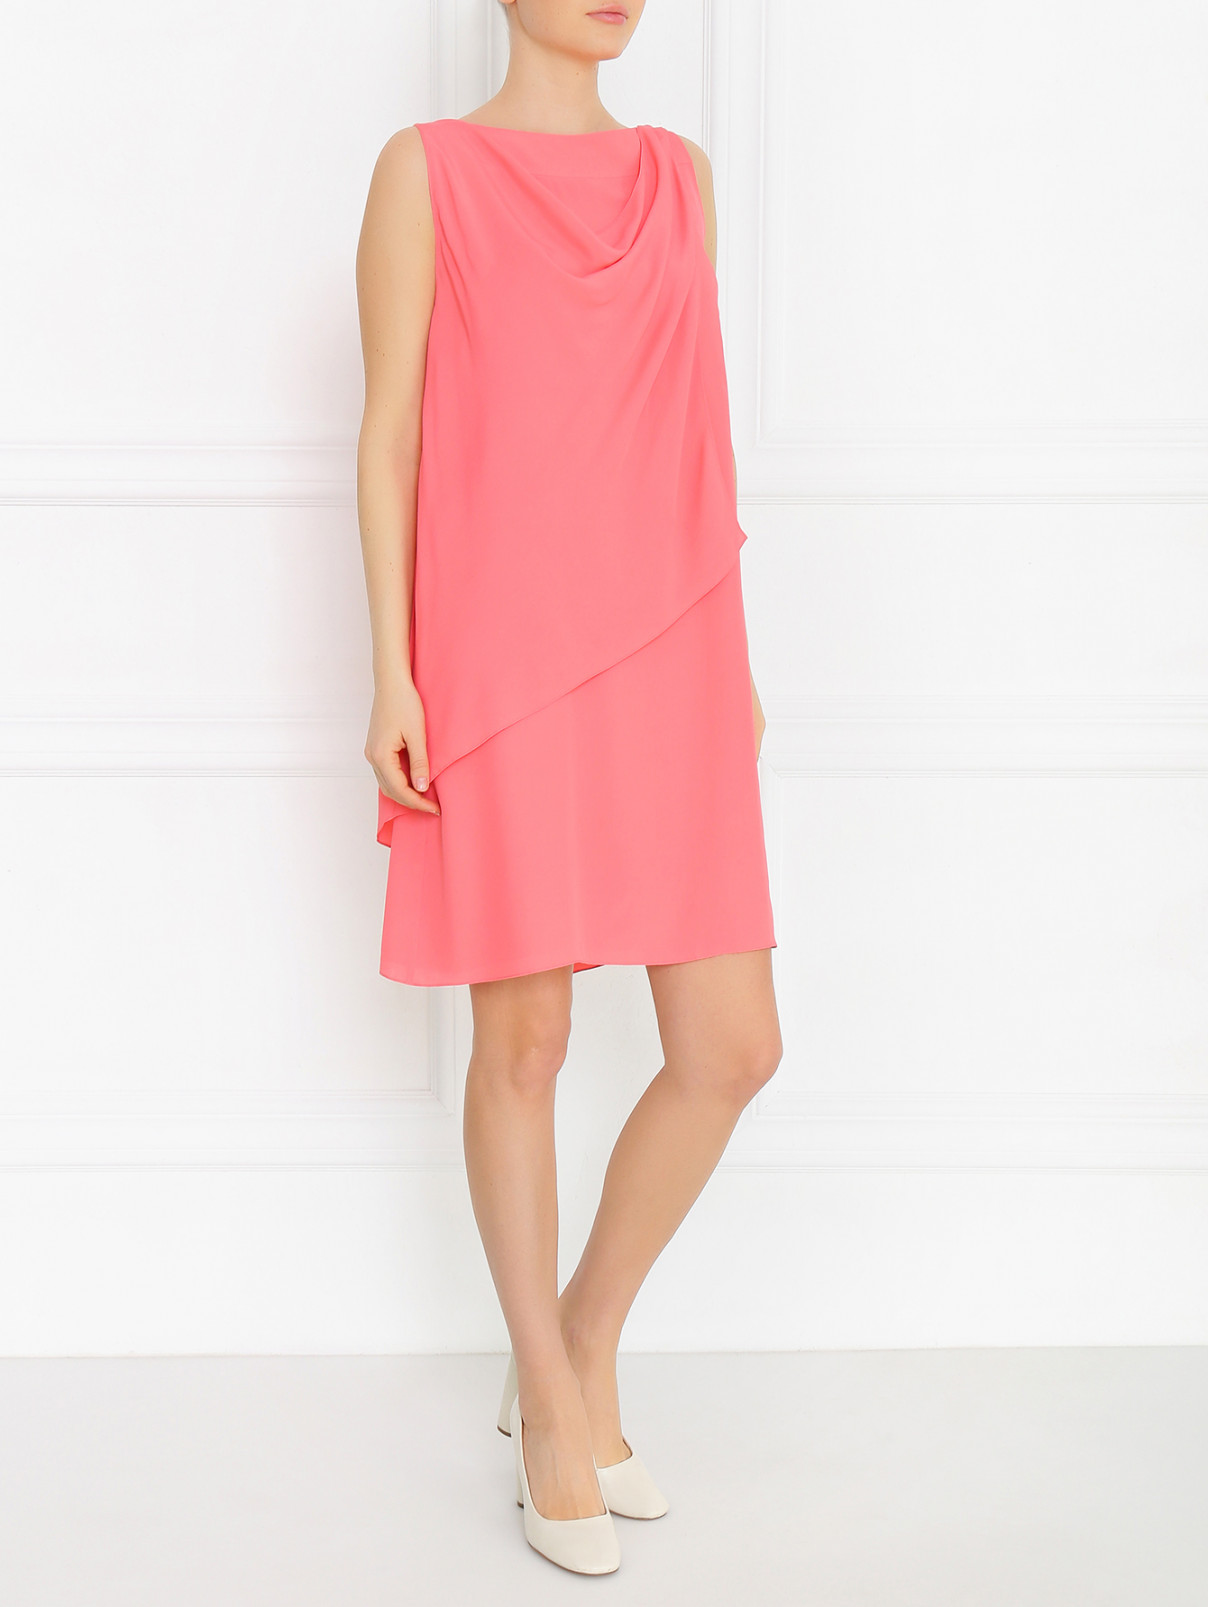 Платье-мини из шелка с драпировкой Antonio Marras  –  Модель Общий вид  – Цвет:  Розовый